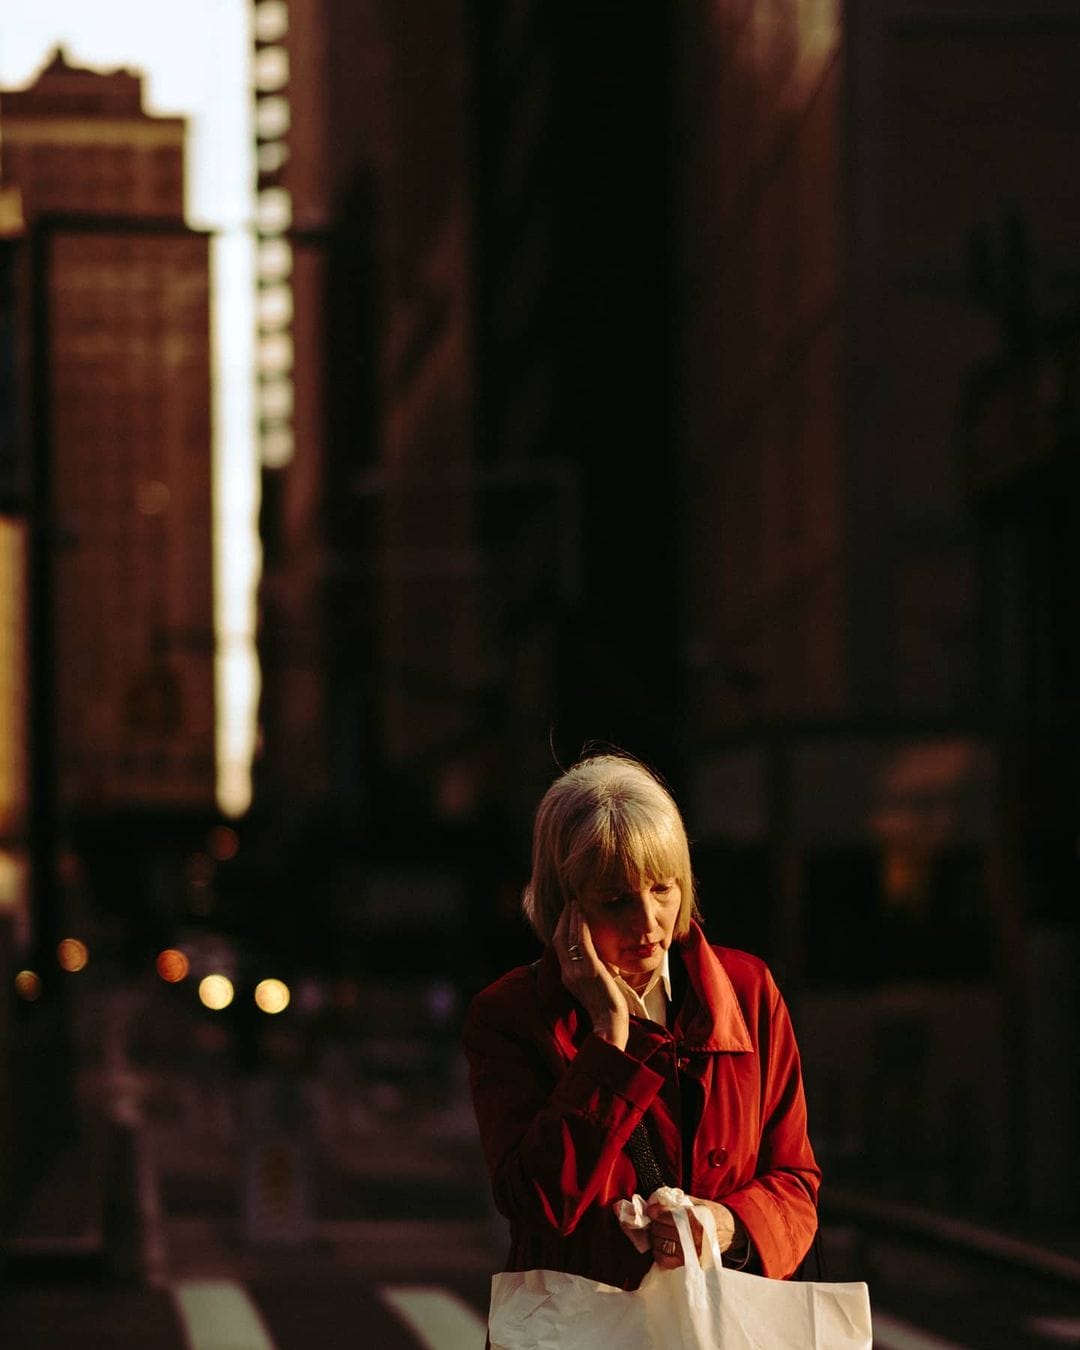 Une femme seule au milieu de la frénésie urbaine capturée par le photographe Joshua K. Jackson